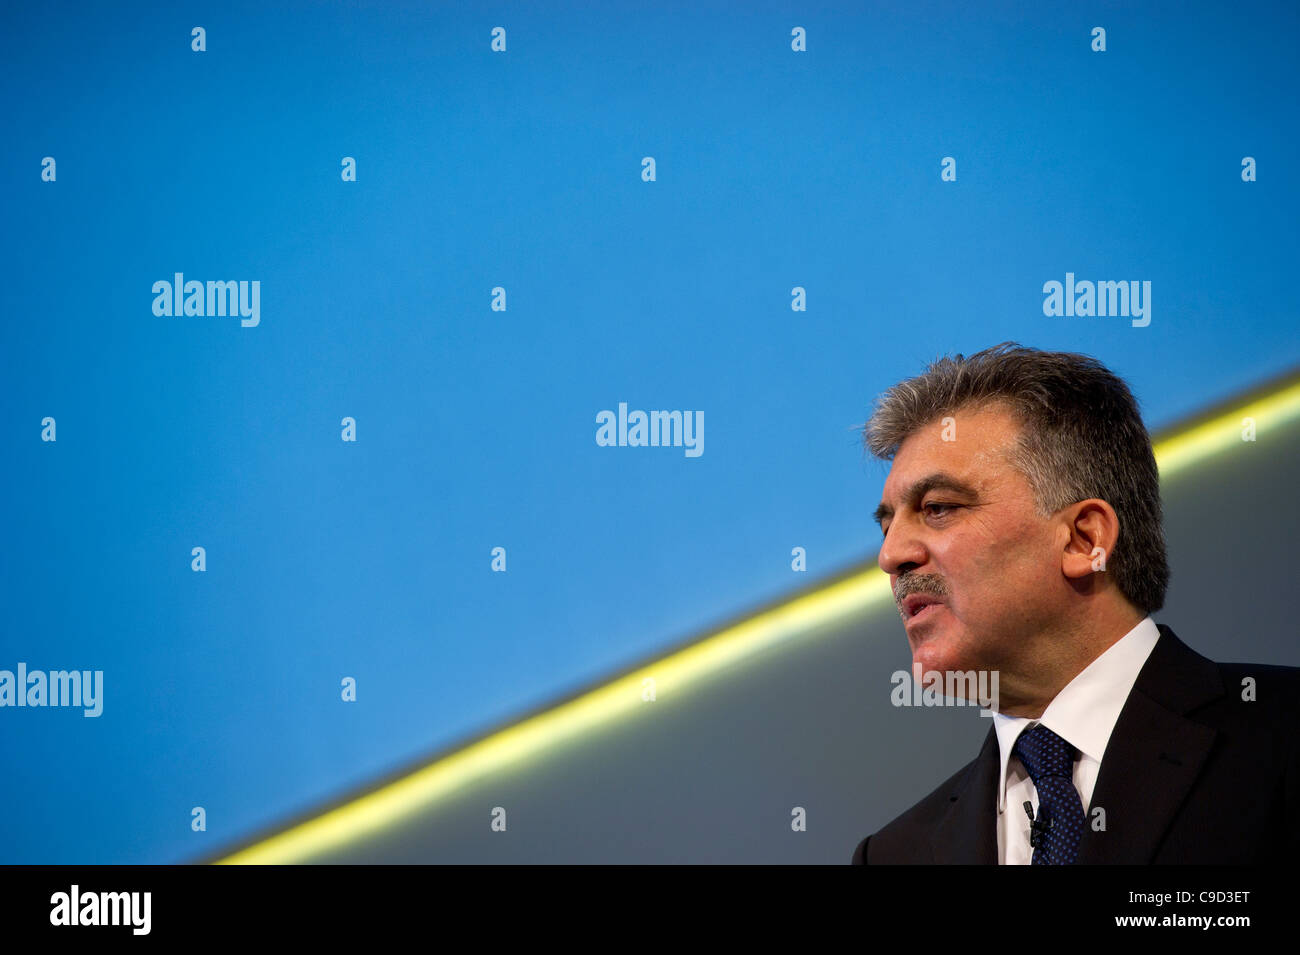 Abdullah Gül, Präsident der Türkei, spricht auf einer Konferenz in London November 2011 Stockfoto